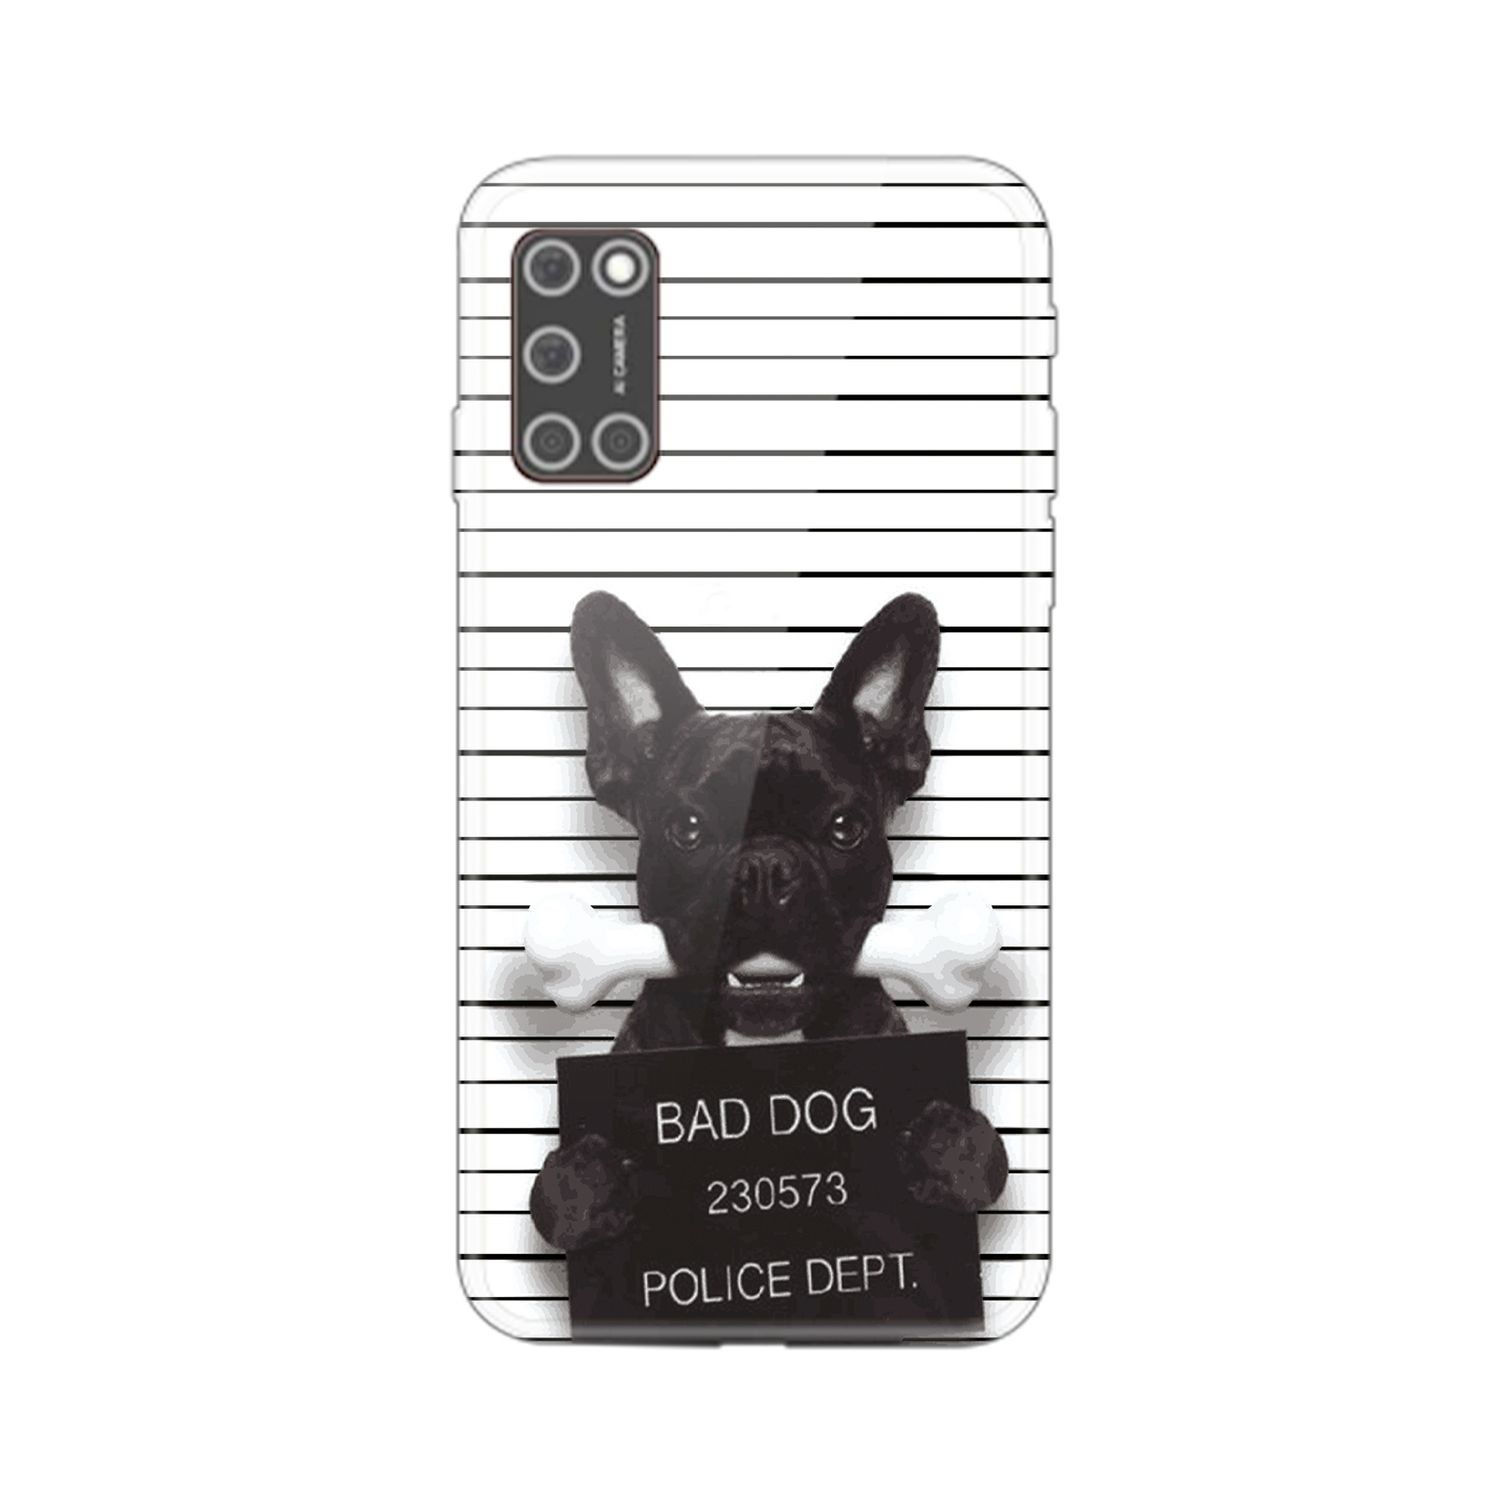 DESIGN Bulldogge realme, Bad Case, KÖNIG C35, Backcover, Dog